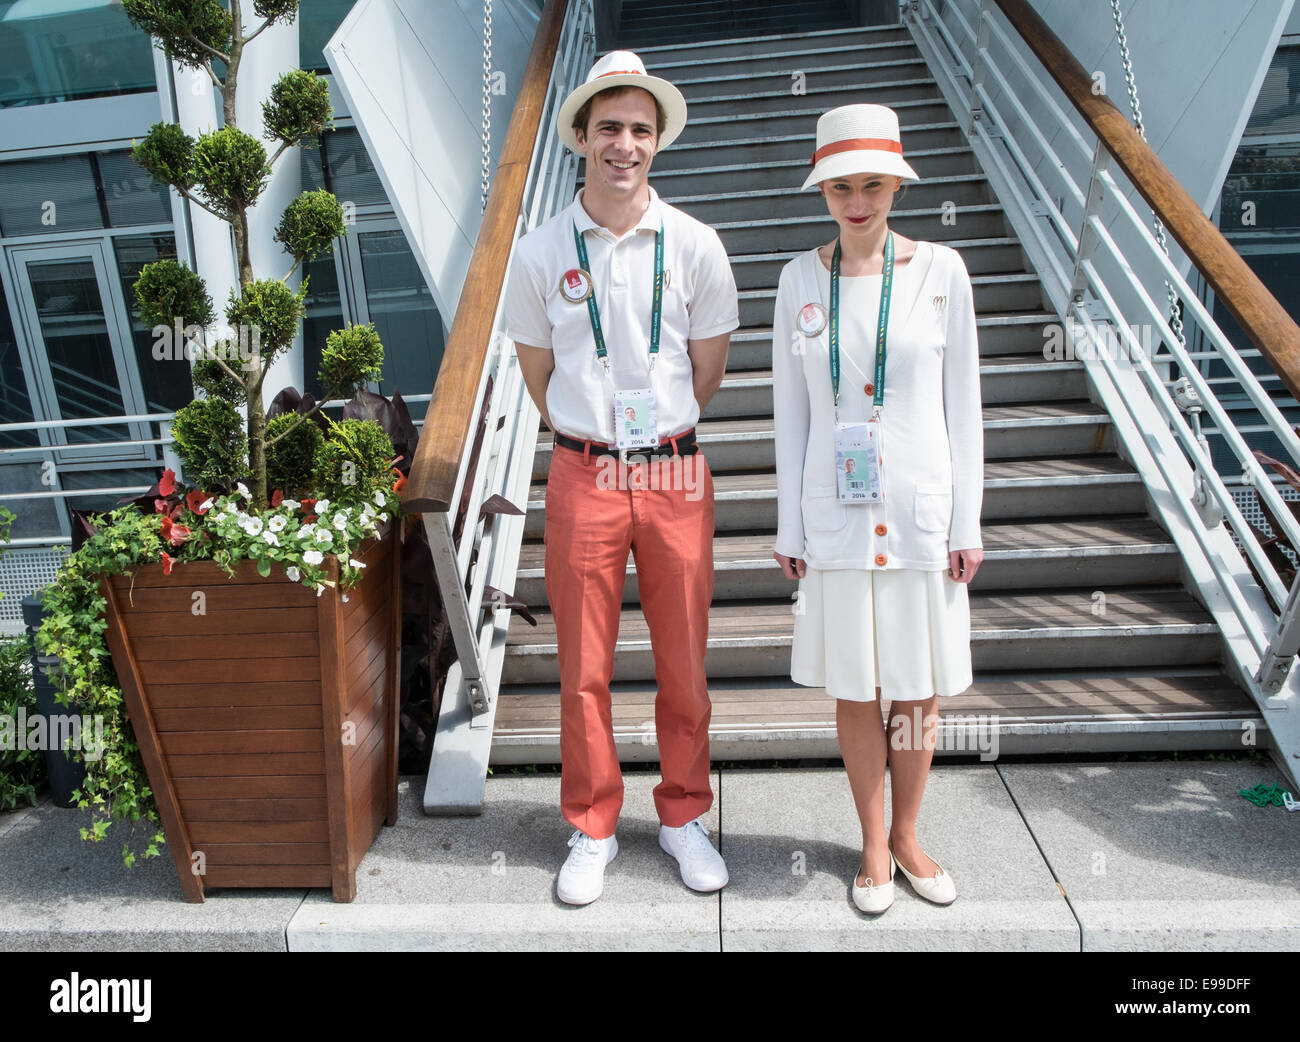 Cool, die uniformierten gekleidet stilvoll gestalteten Ticket Personal an Roland Garros French Open Tennisturnier, Paris im Juni. Stockfoto